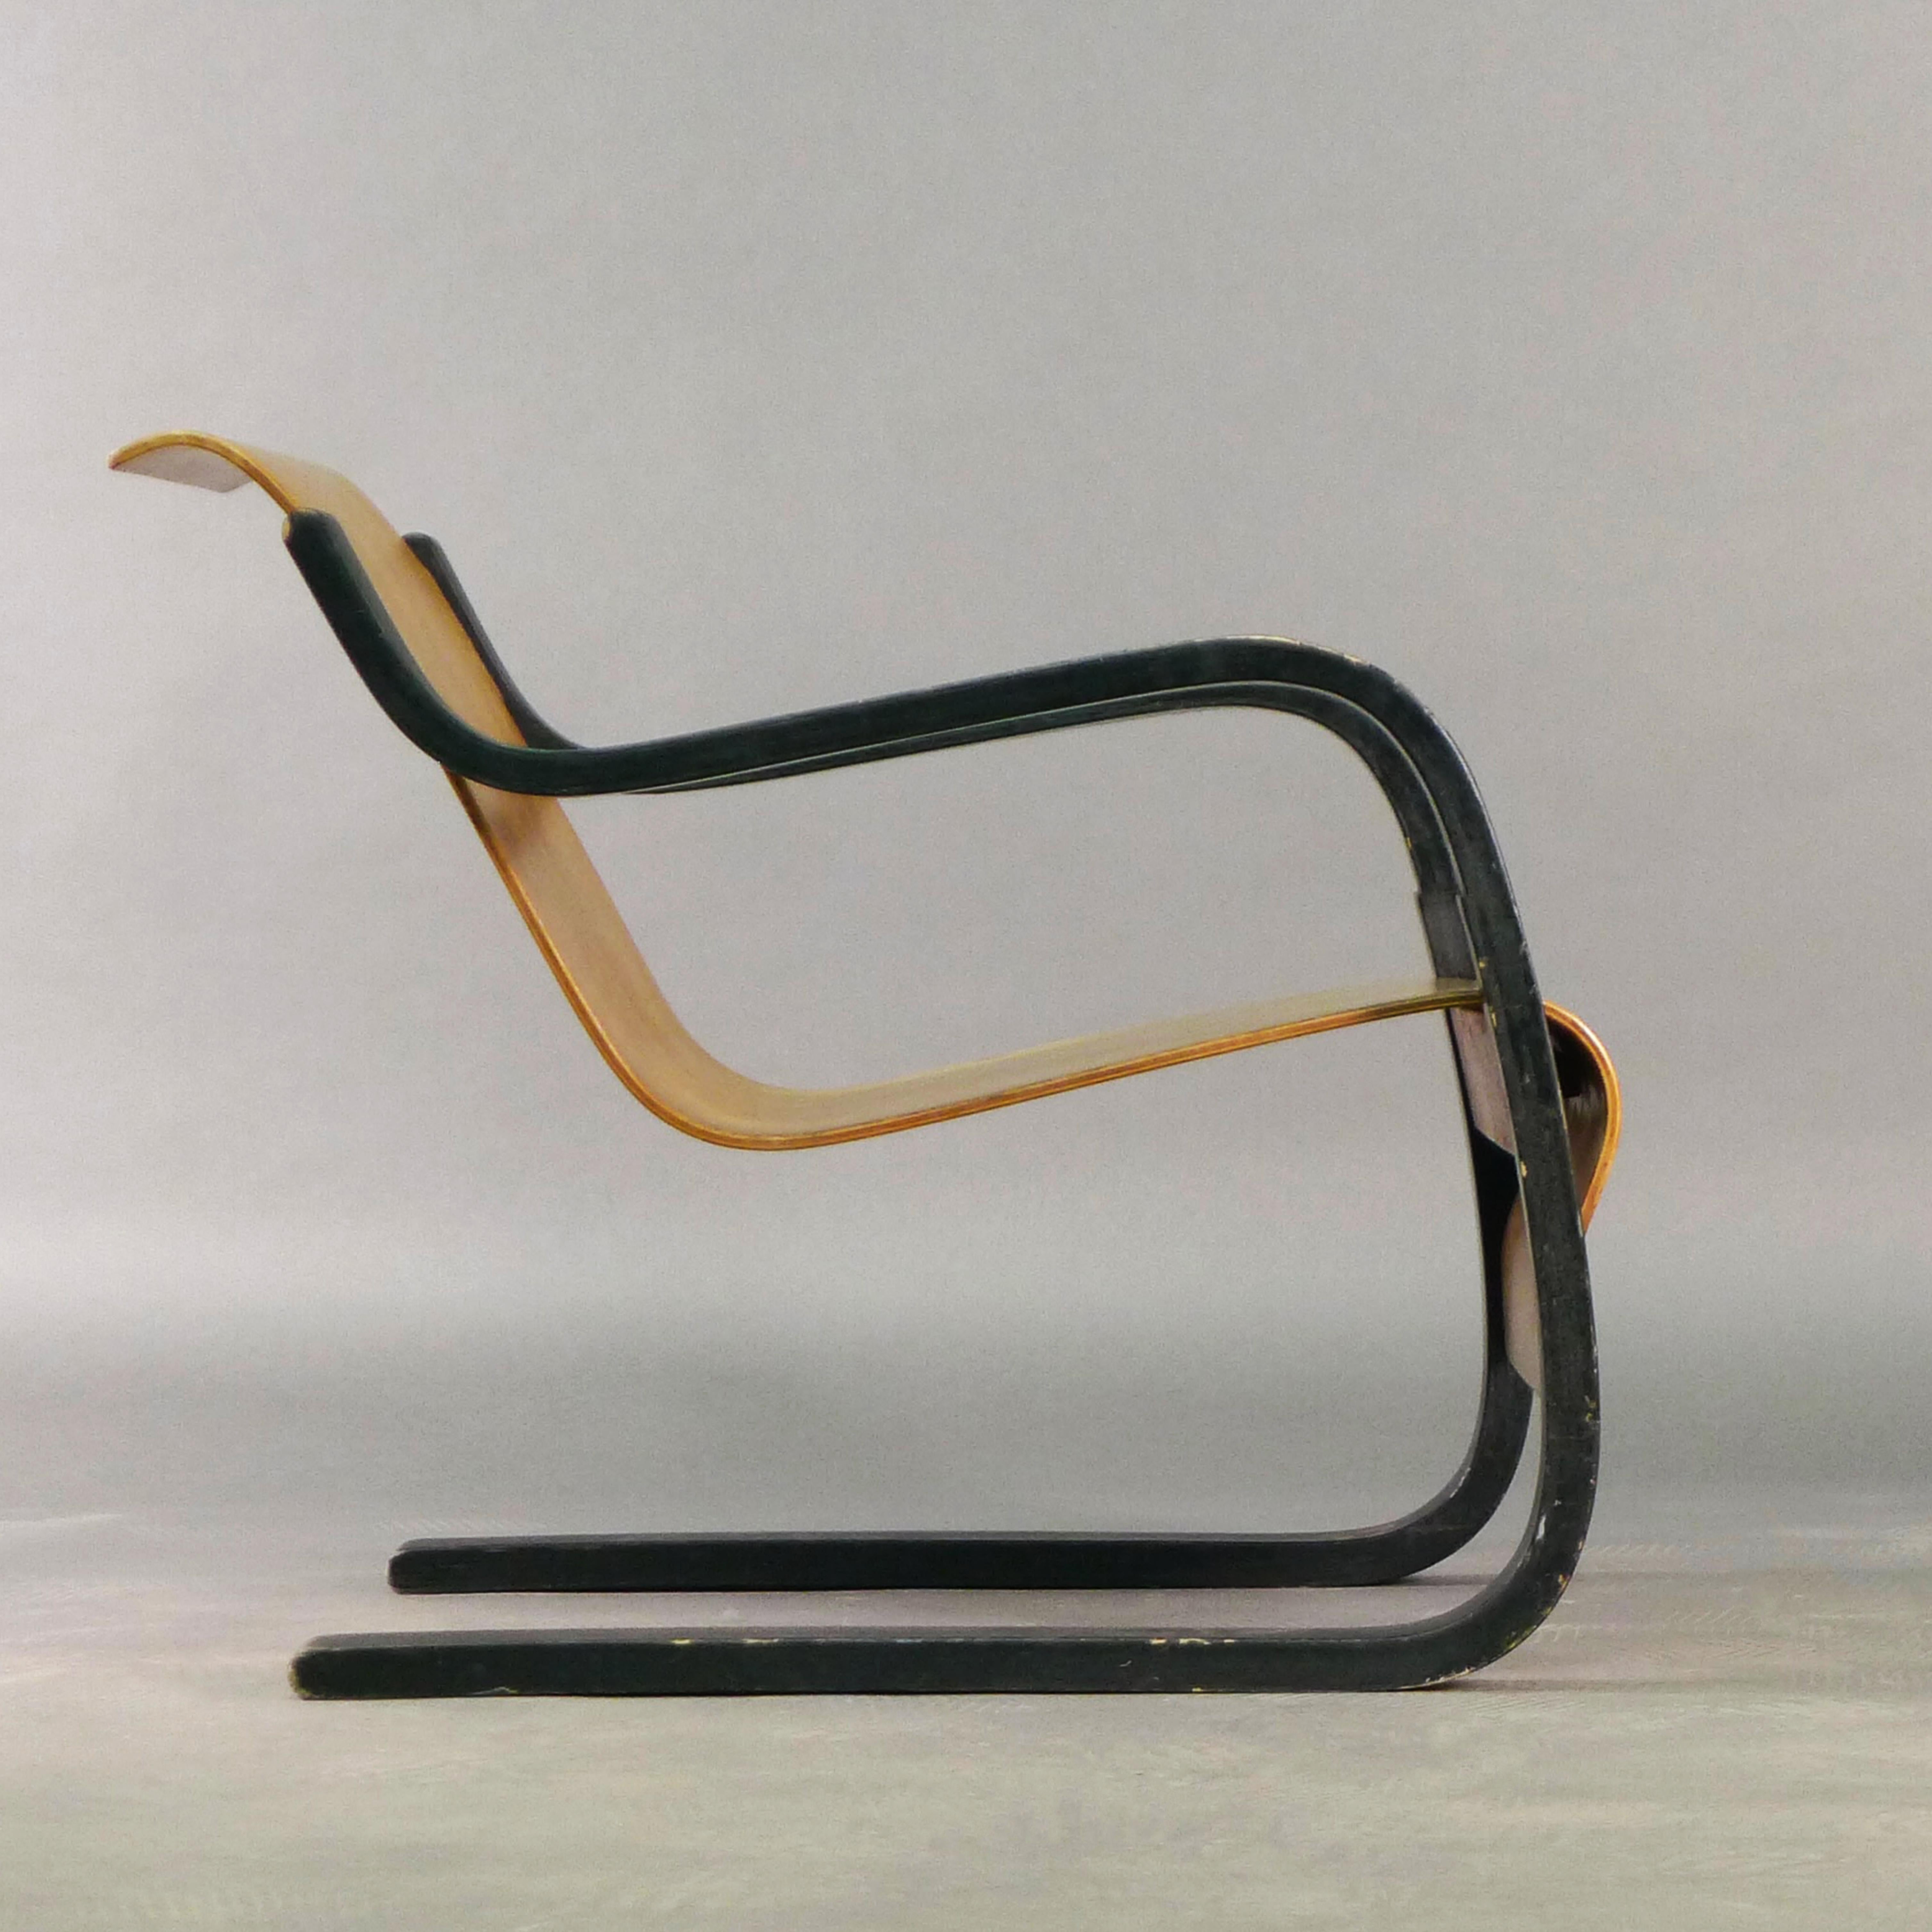 Chaise Alvar Aalto modèle 31 en contreplaqué de bouleau moulé, assise et dossier monobloc en porte-à-faux, suspendus à des supports pliés peints en noir.

Conçu dans les années 1930 et produit par Huonekalu-ja Rakennustyötehdas A.b. Turku en